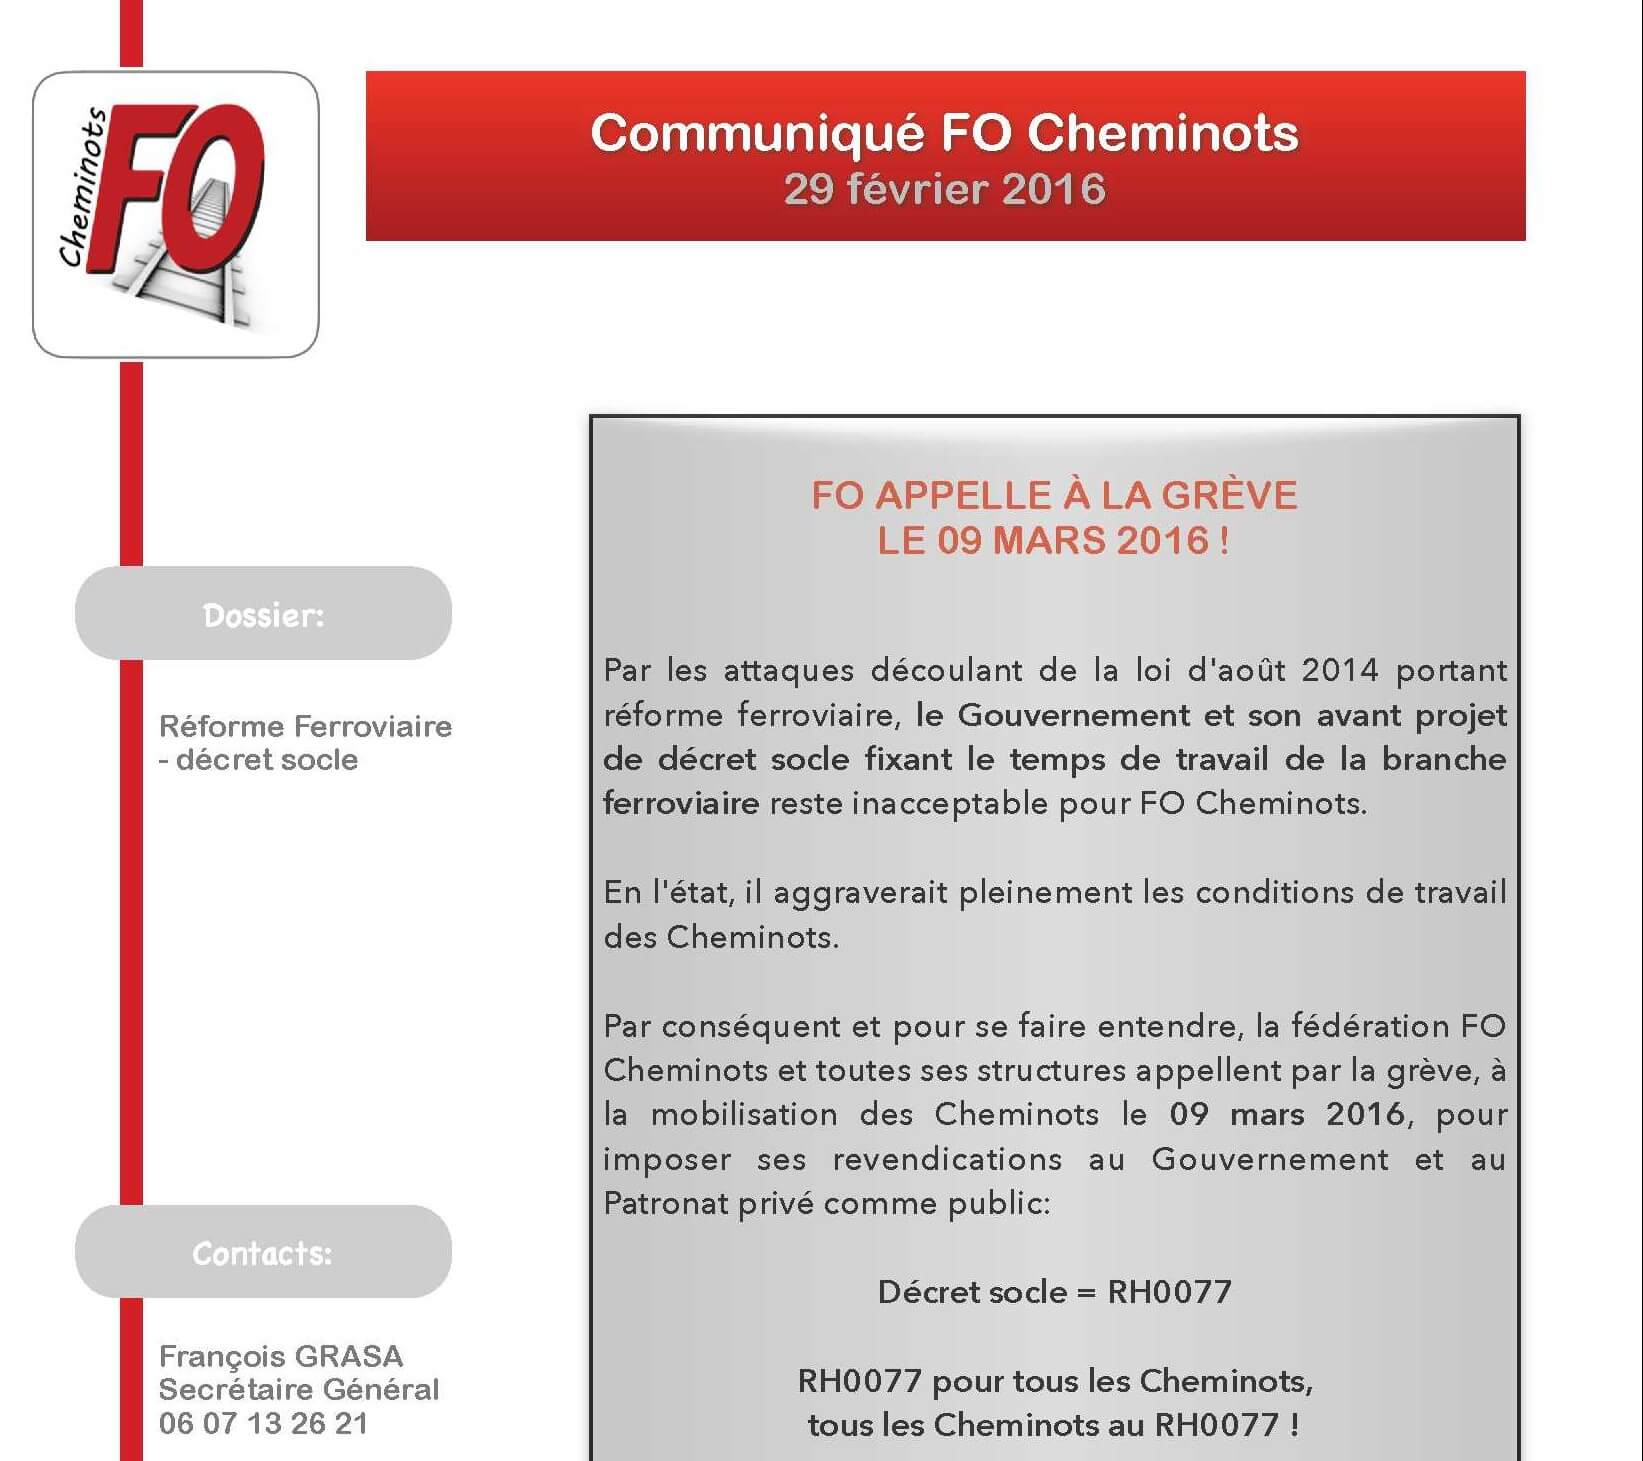 FO Cheminots appelle à la grève le 09 mars 2016 contre l’avant projet de décret socle fixant les règles de temps de travail dans la branche ferroviaire